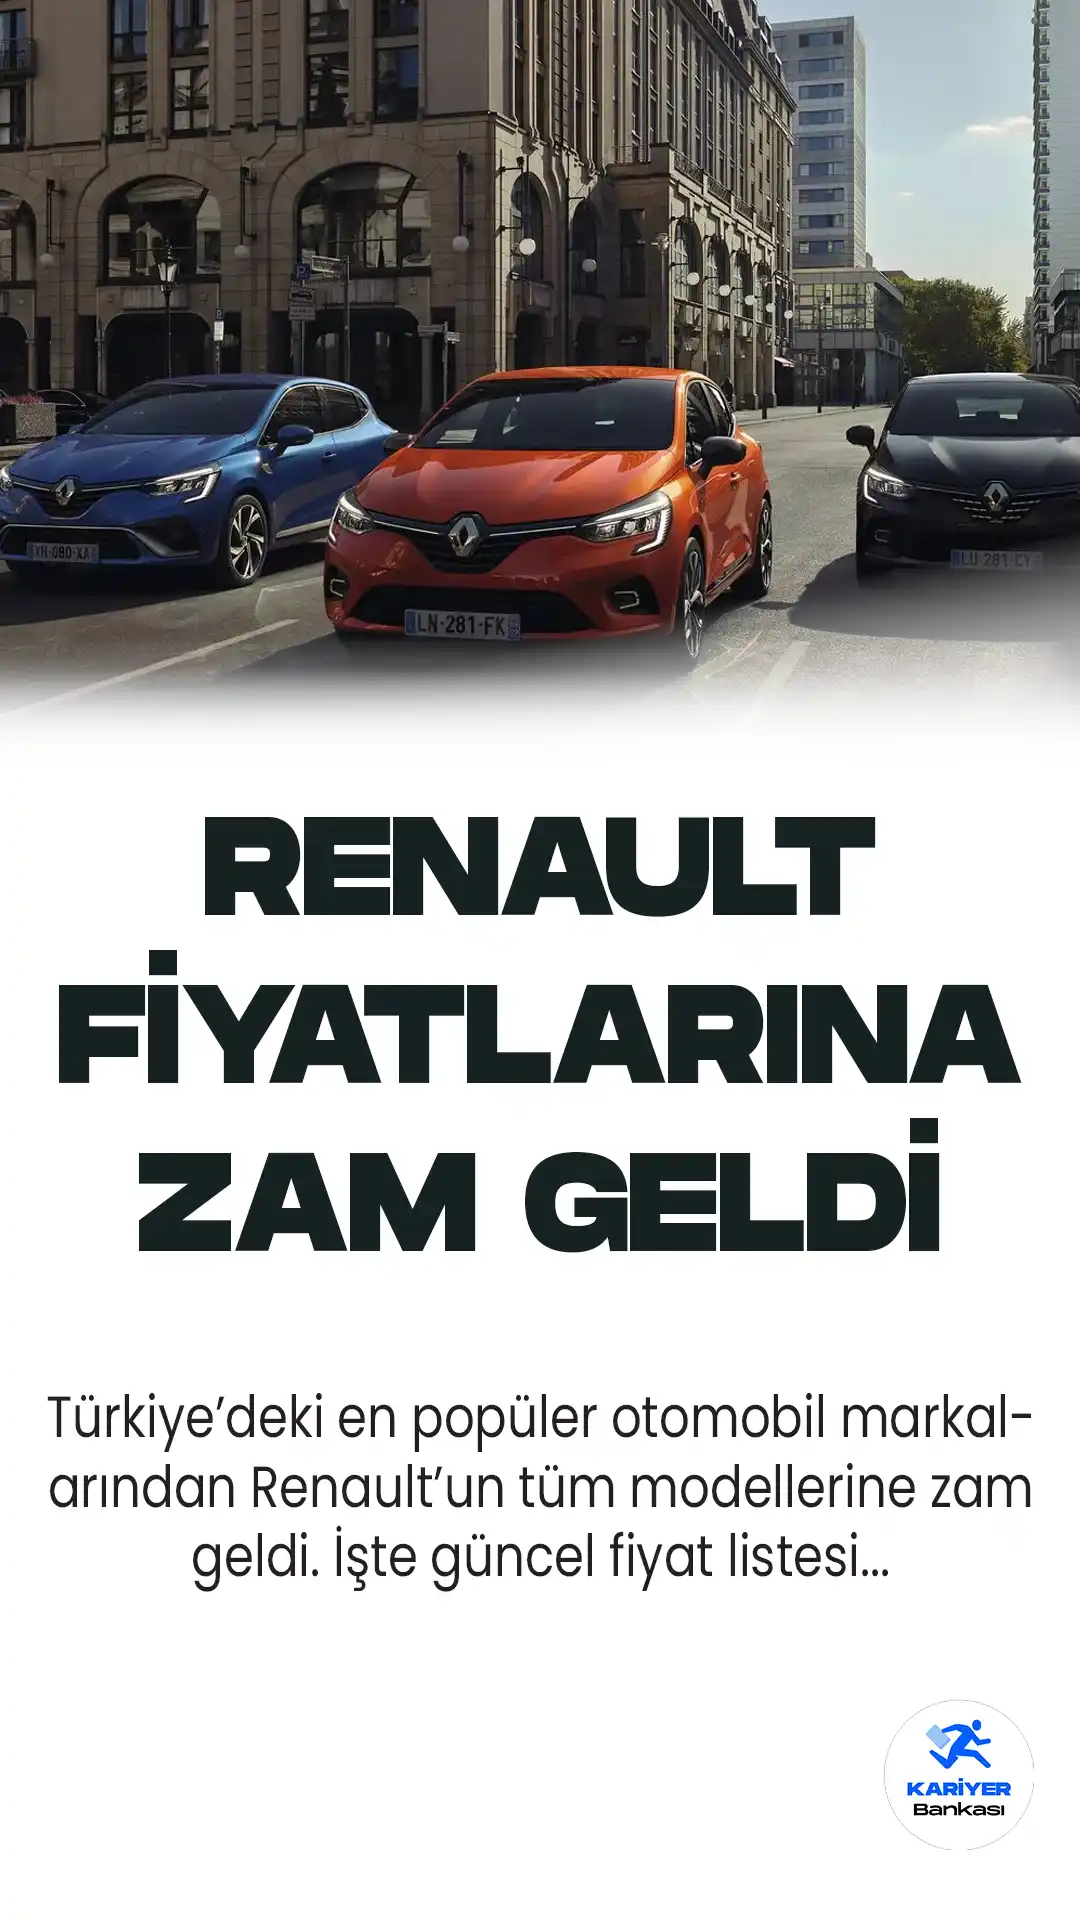 Renault, Mayıs 2023 itibariyle güncellenen fiyat listesini paylaştı. Nisan ayında fiyatları yükselten Renault, Mayıs ayında da döviz kuru zamlarını araç fiyatlarına yansıtmış oldu.